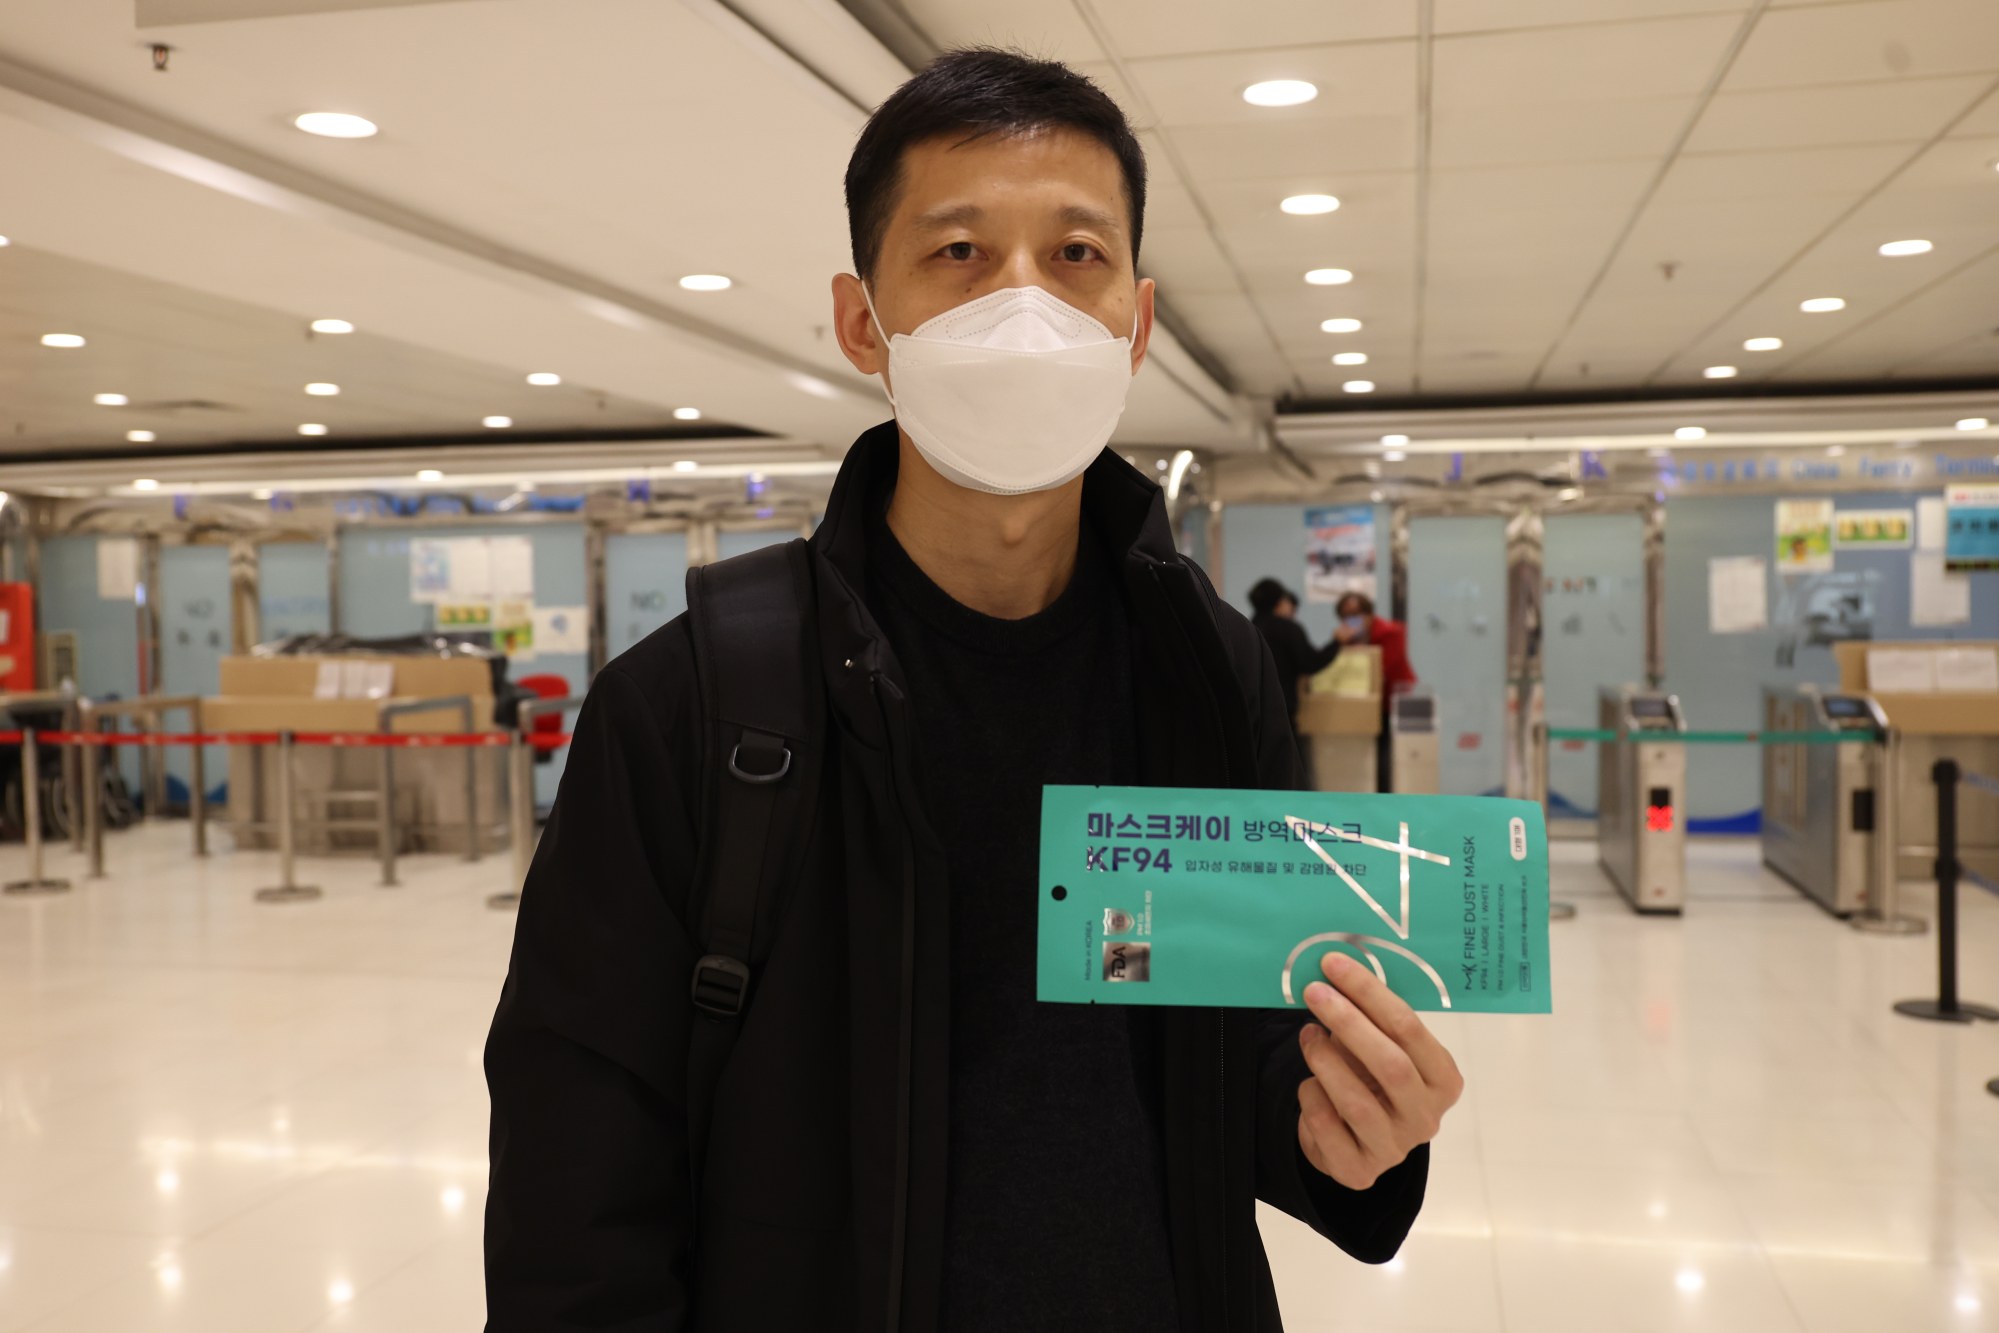 hong kong quarantine free travel by november